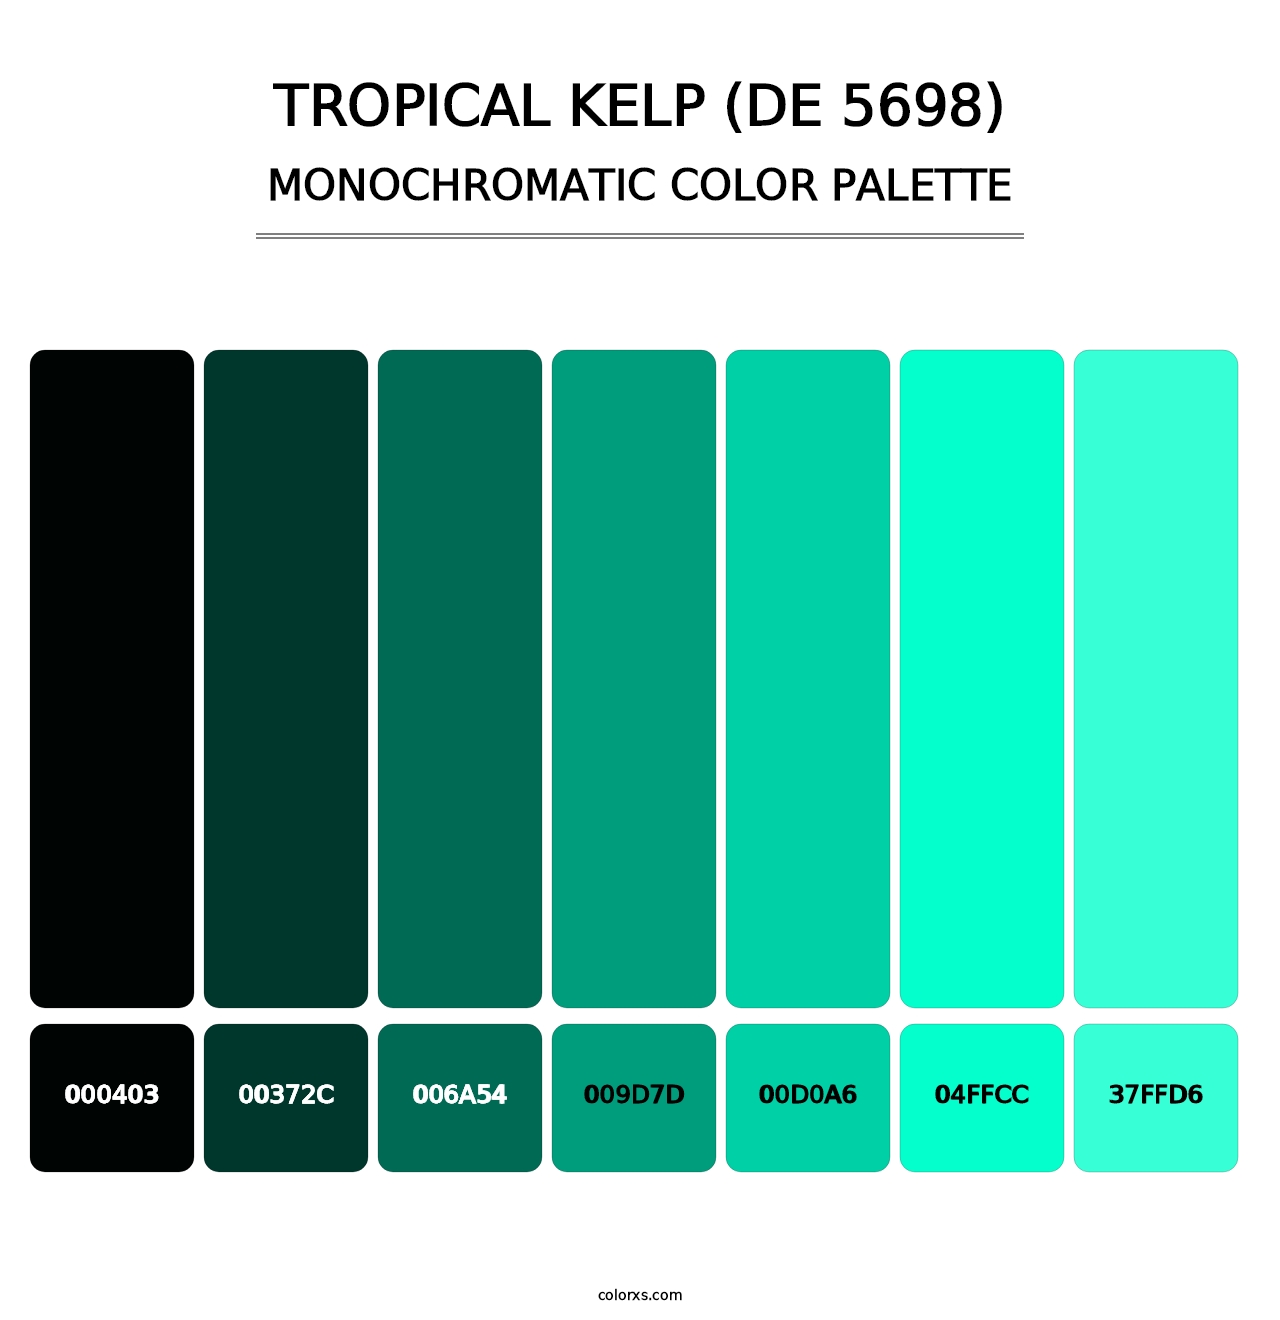 Tropical Kelp (DE 5698) - Monochromatic Color Palette